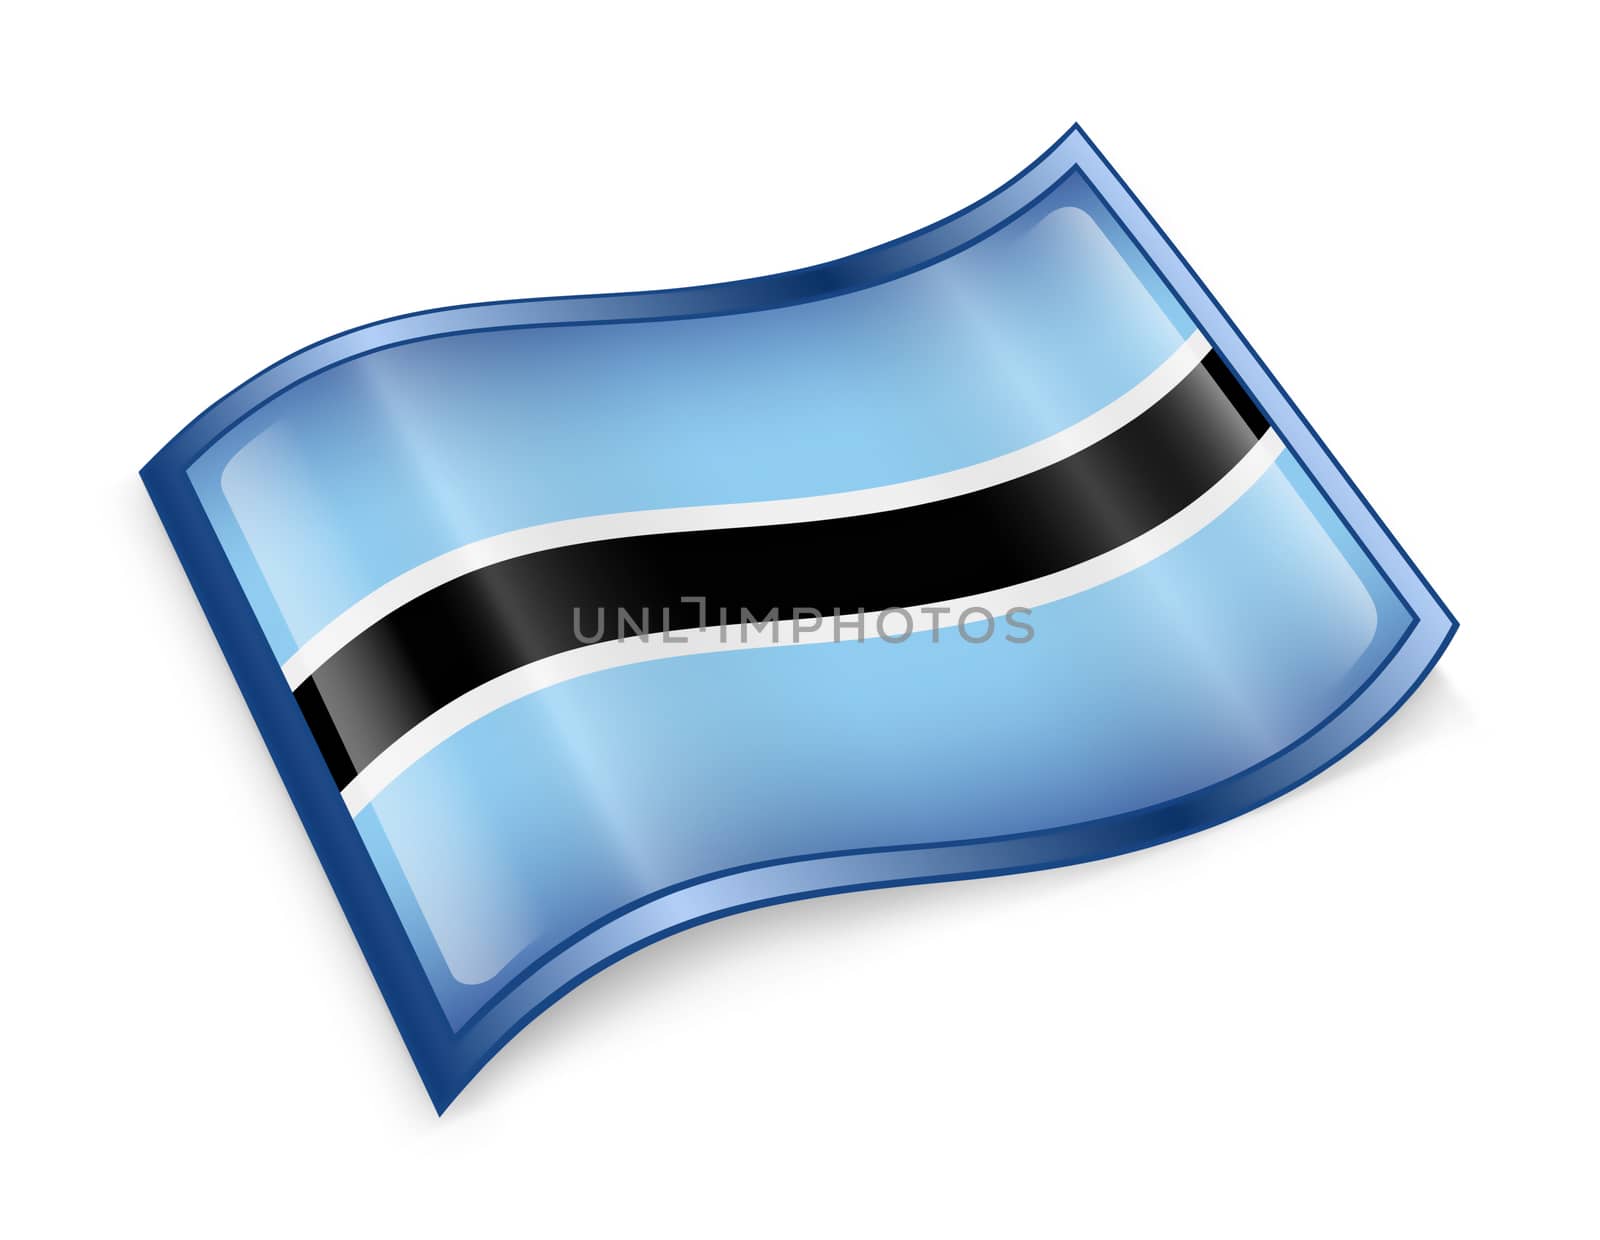 Botswana Flag icon, isolated on white background.